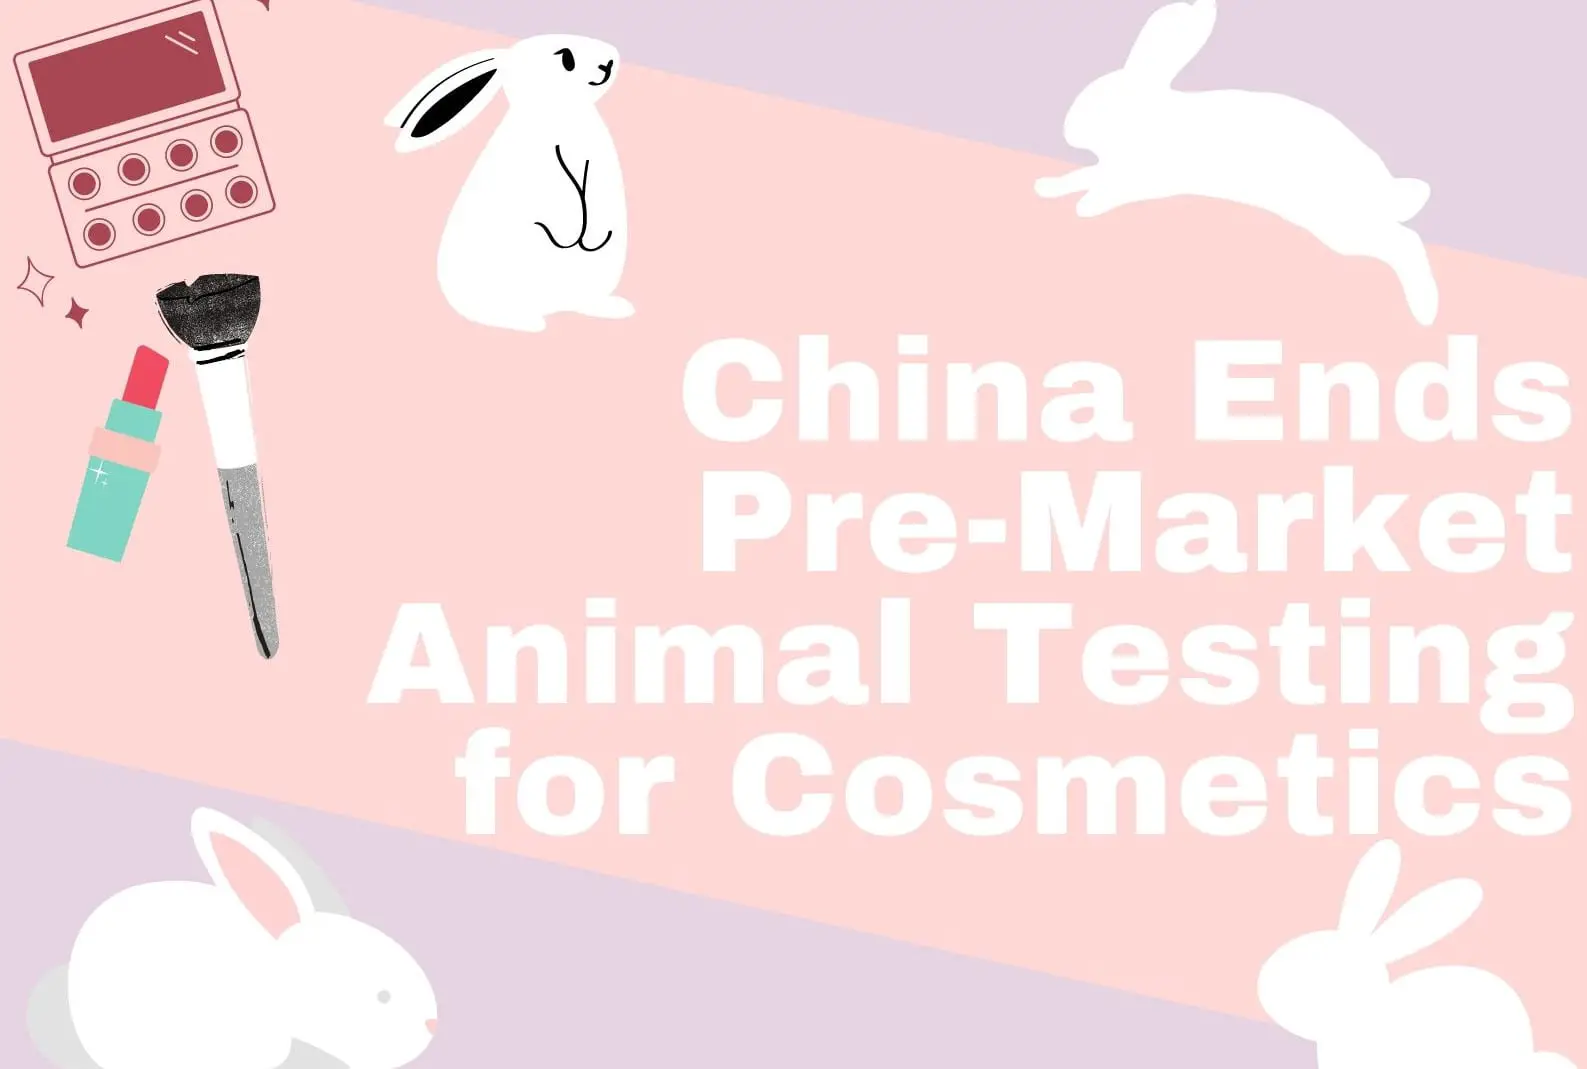 China animal testing poster